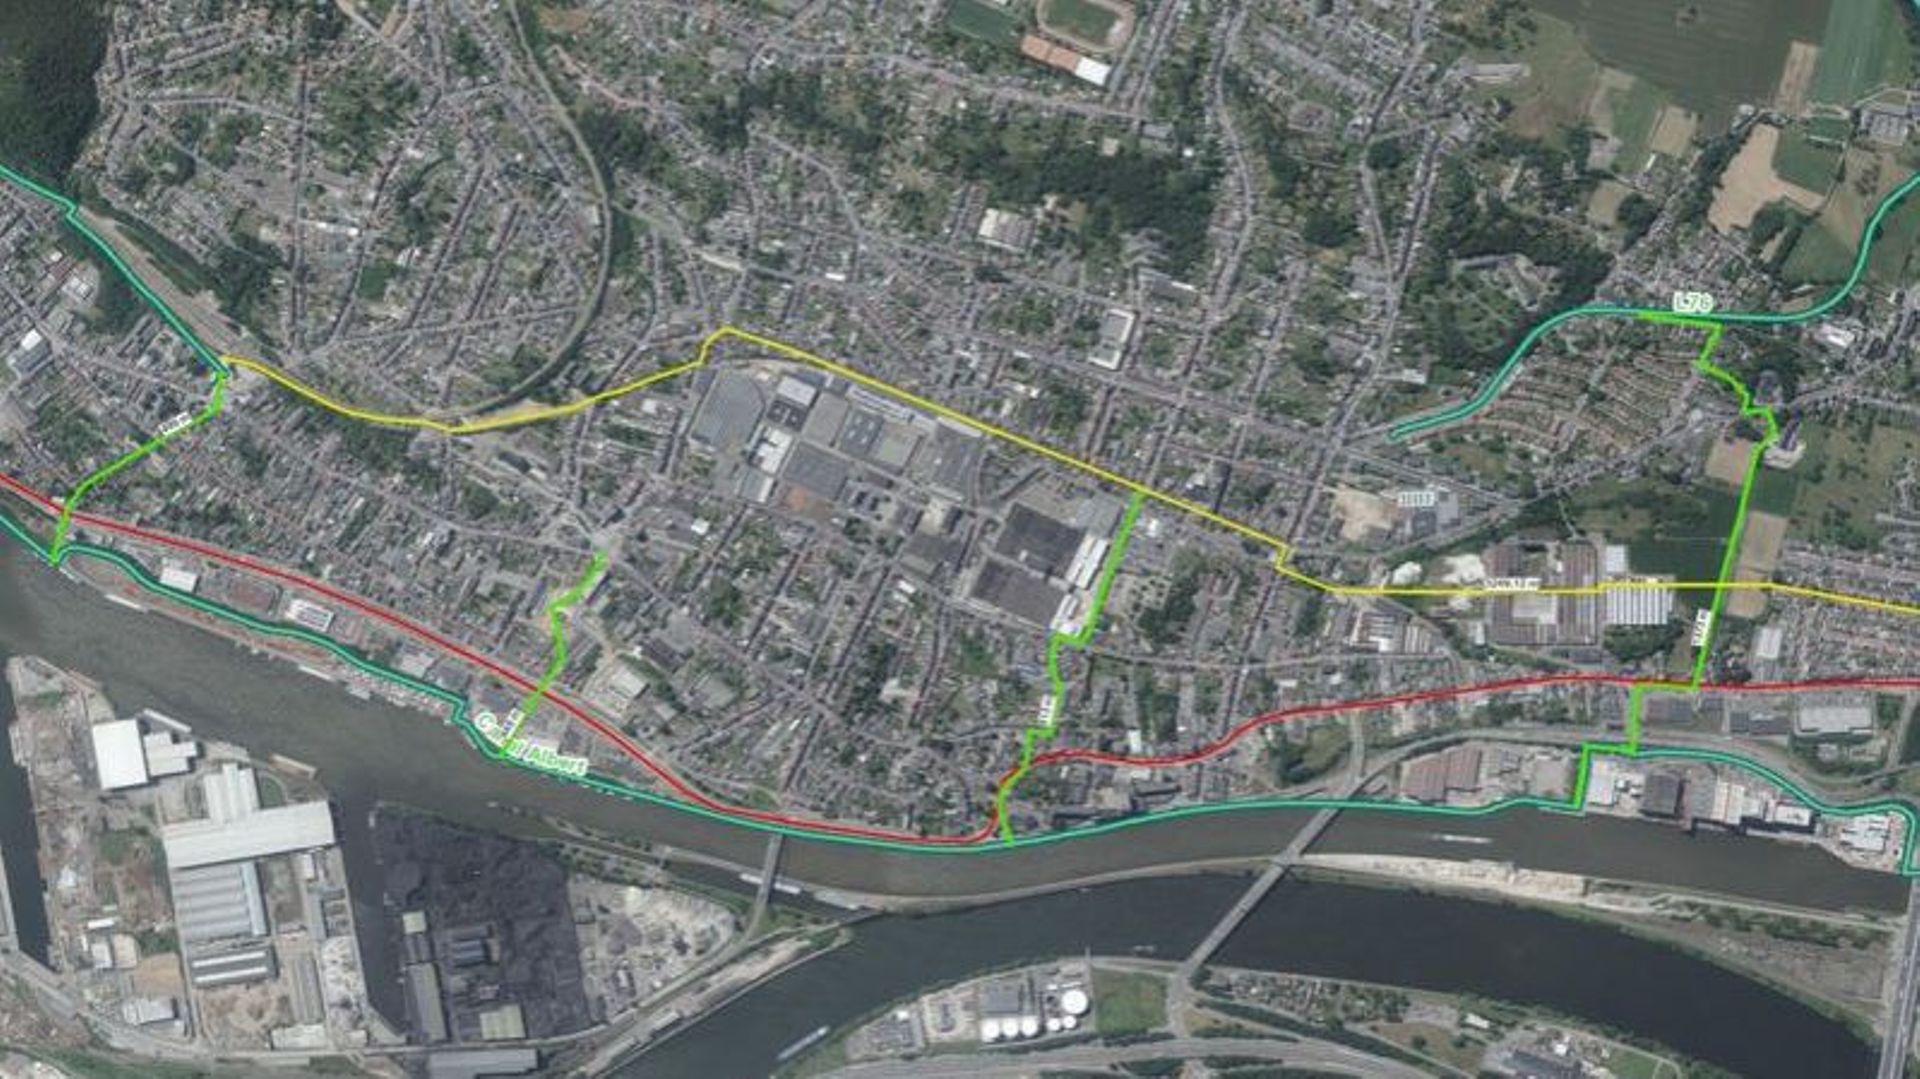 En rouge, le tram ; en jaune la low line, en vers clair, les transversales pour "rabattre" les cyclistes vers le tram